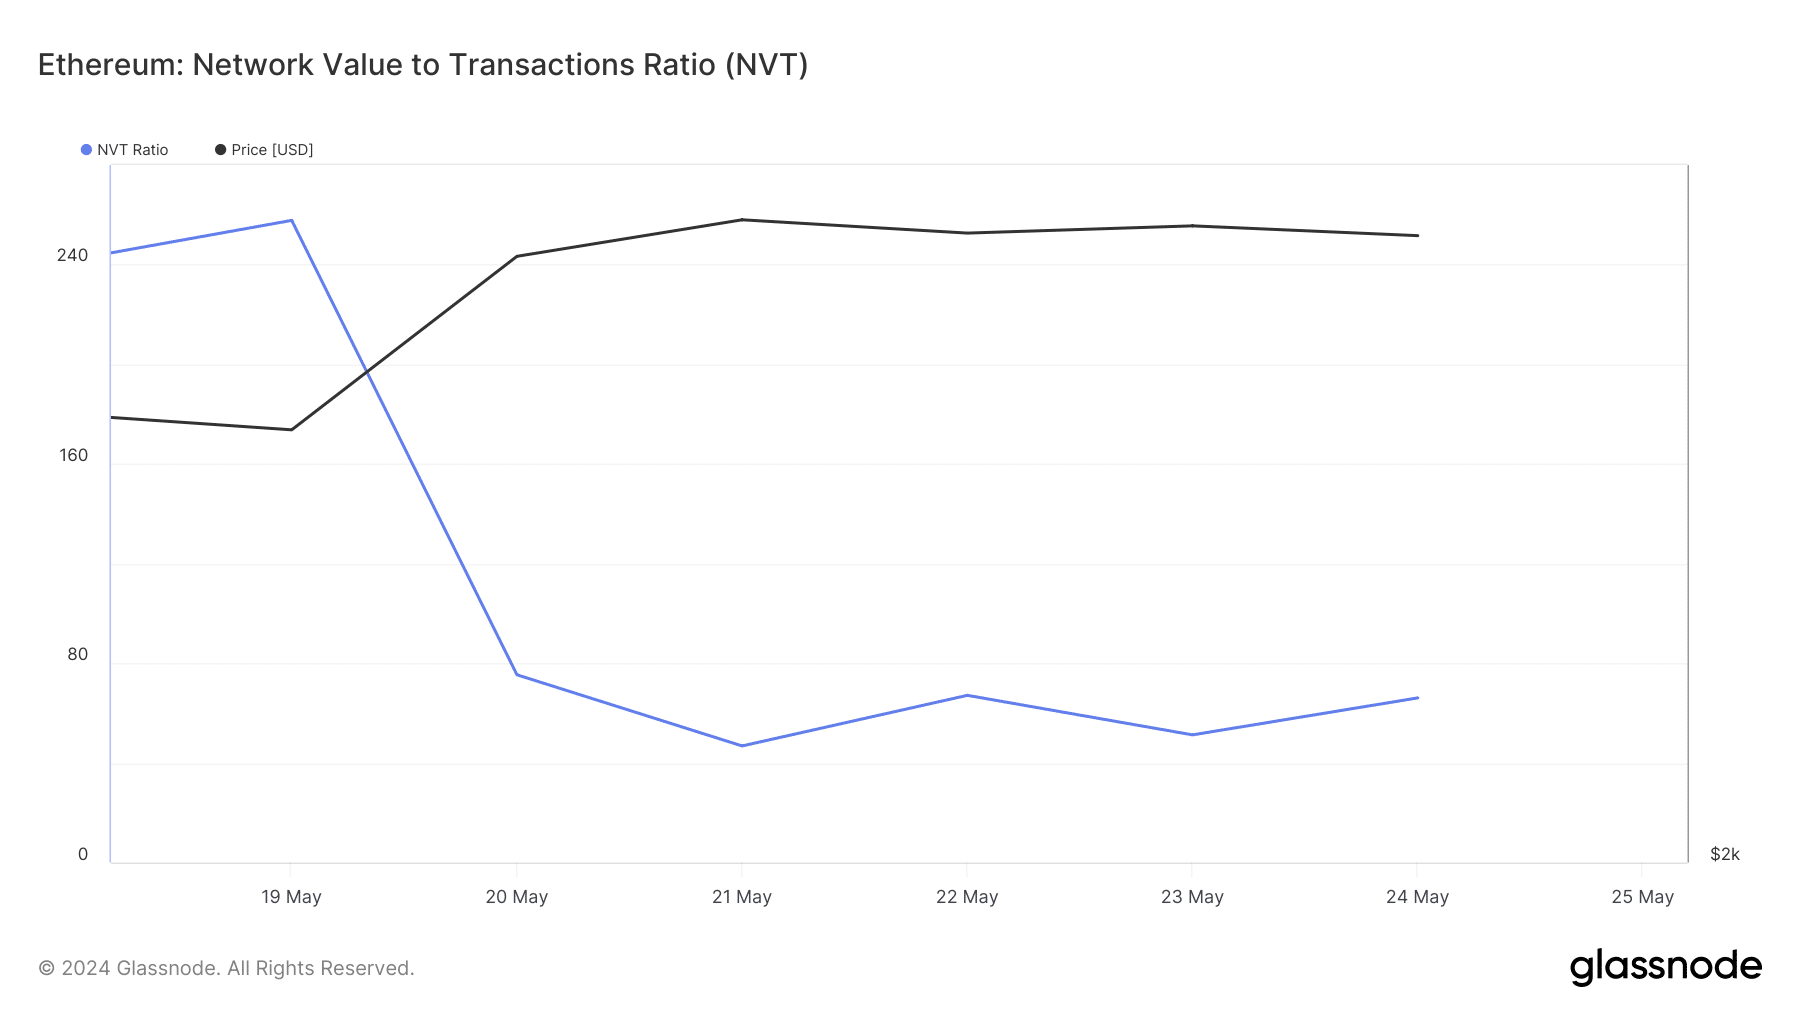 Ethereum's NVT ratio dropped